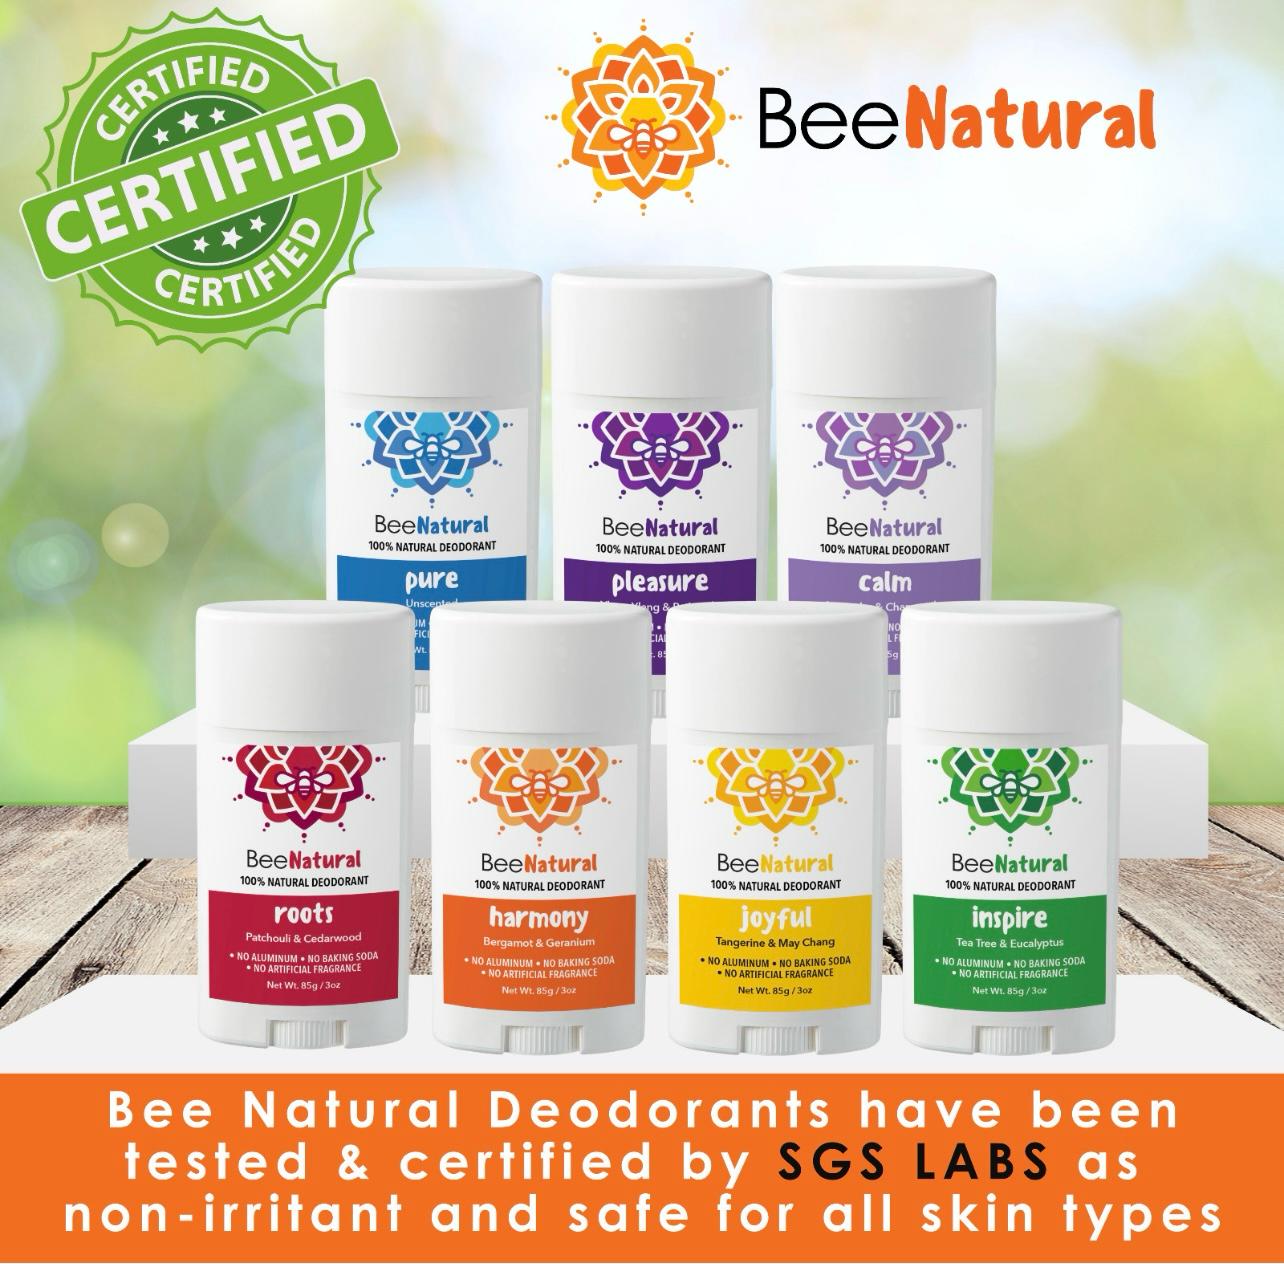 100% Natural Deodorant/Bee Natural